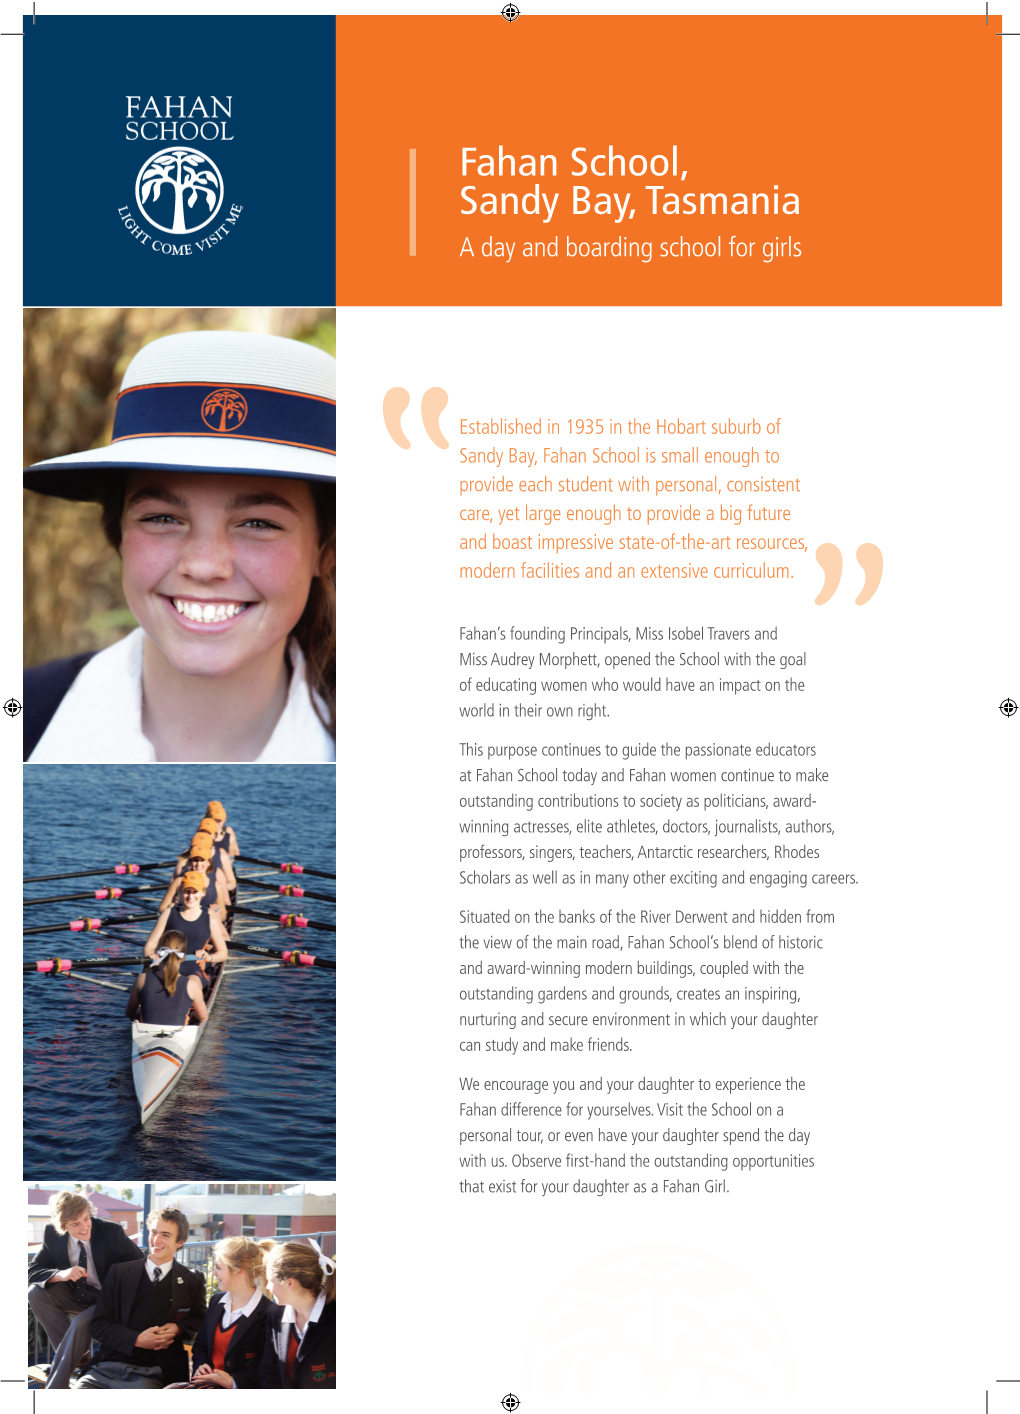 Fahan School, Sandy Bay, Tasmania a Day and Boarding School for Girls